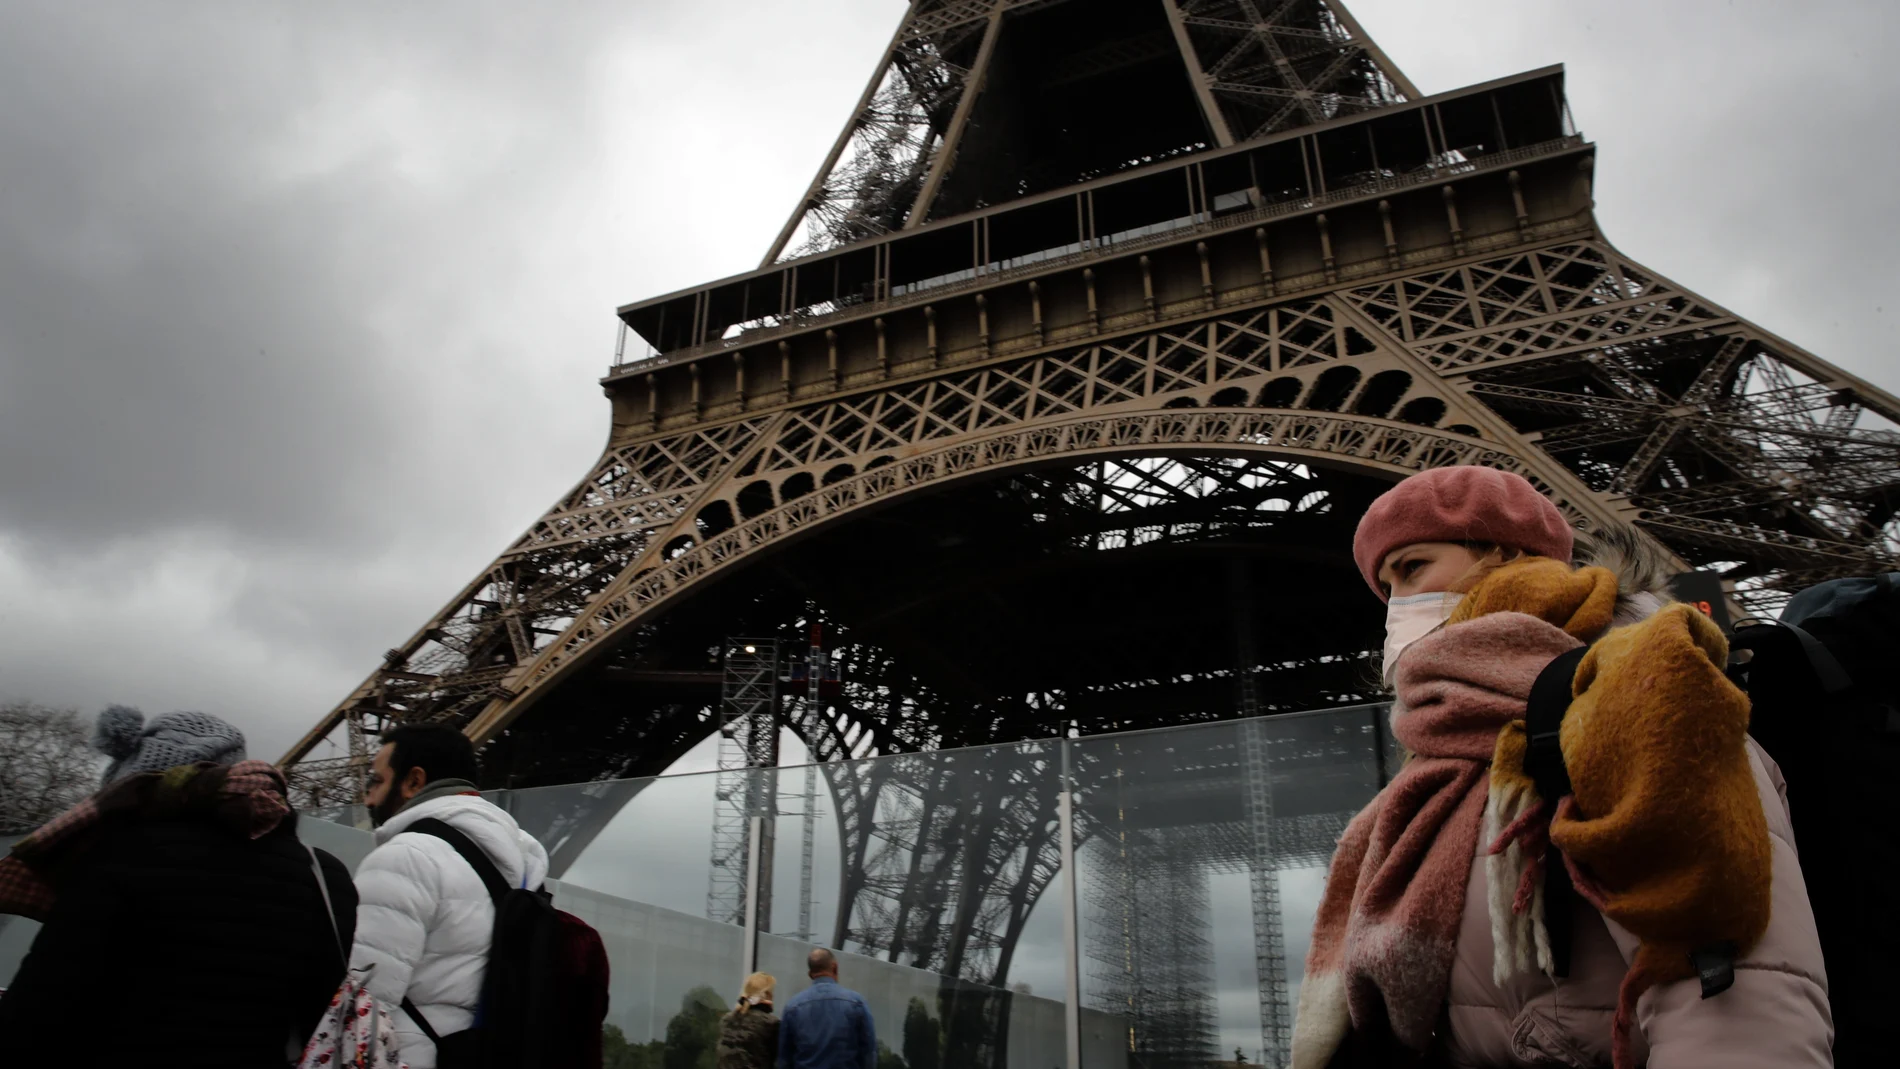 Apenas gente alrededor de la bulliciosa Torre Eiffel, este sábado en París/AP